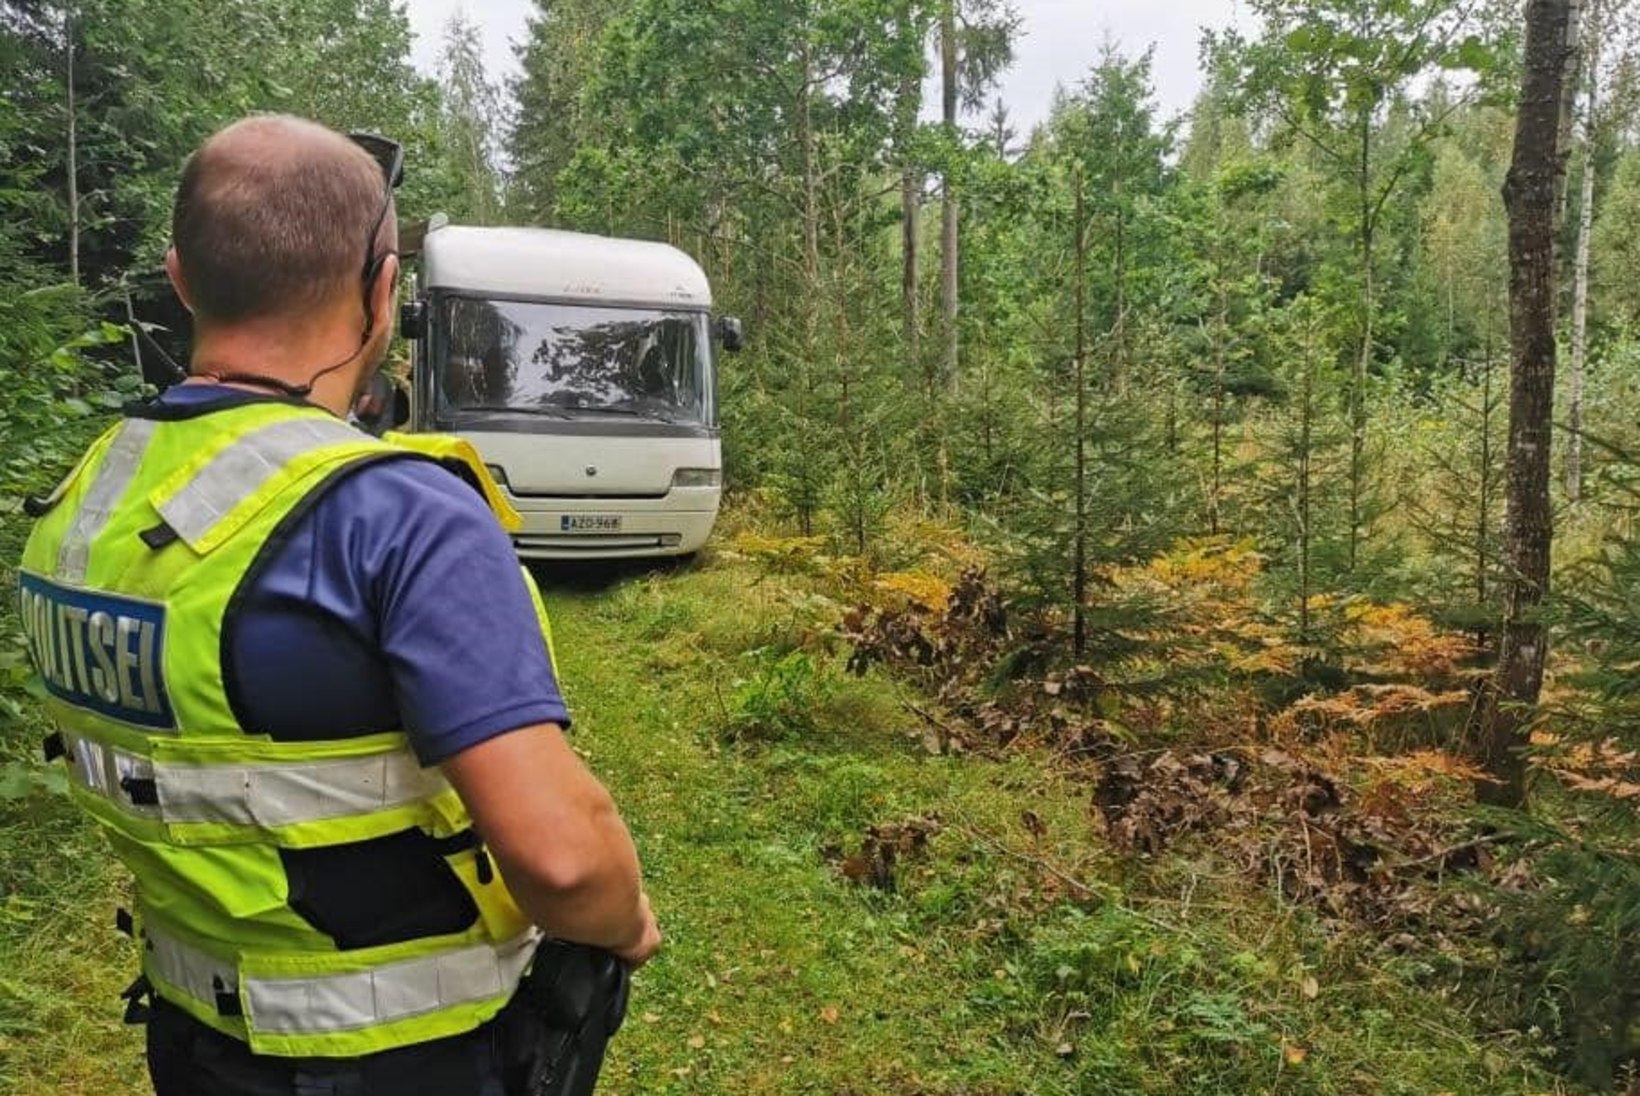 Politsei avastas Elva lähedal metsast matkabussist kolm purjus rallituristi, kes soovisid võistlust ilma loata vaadata